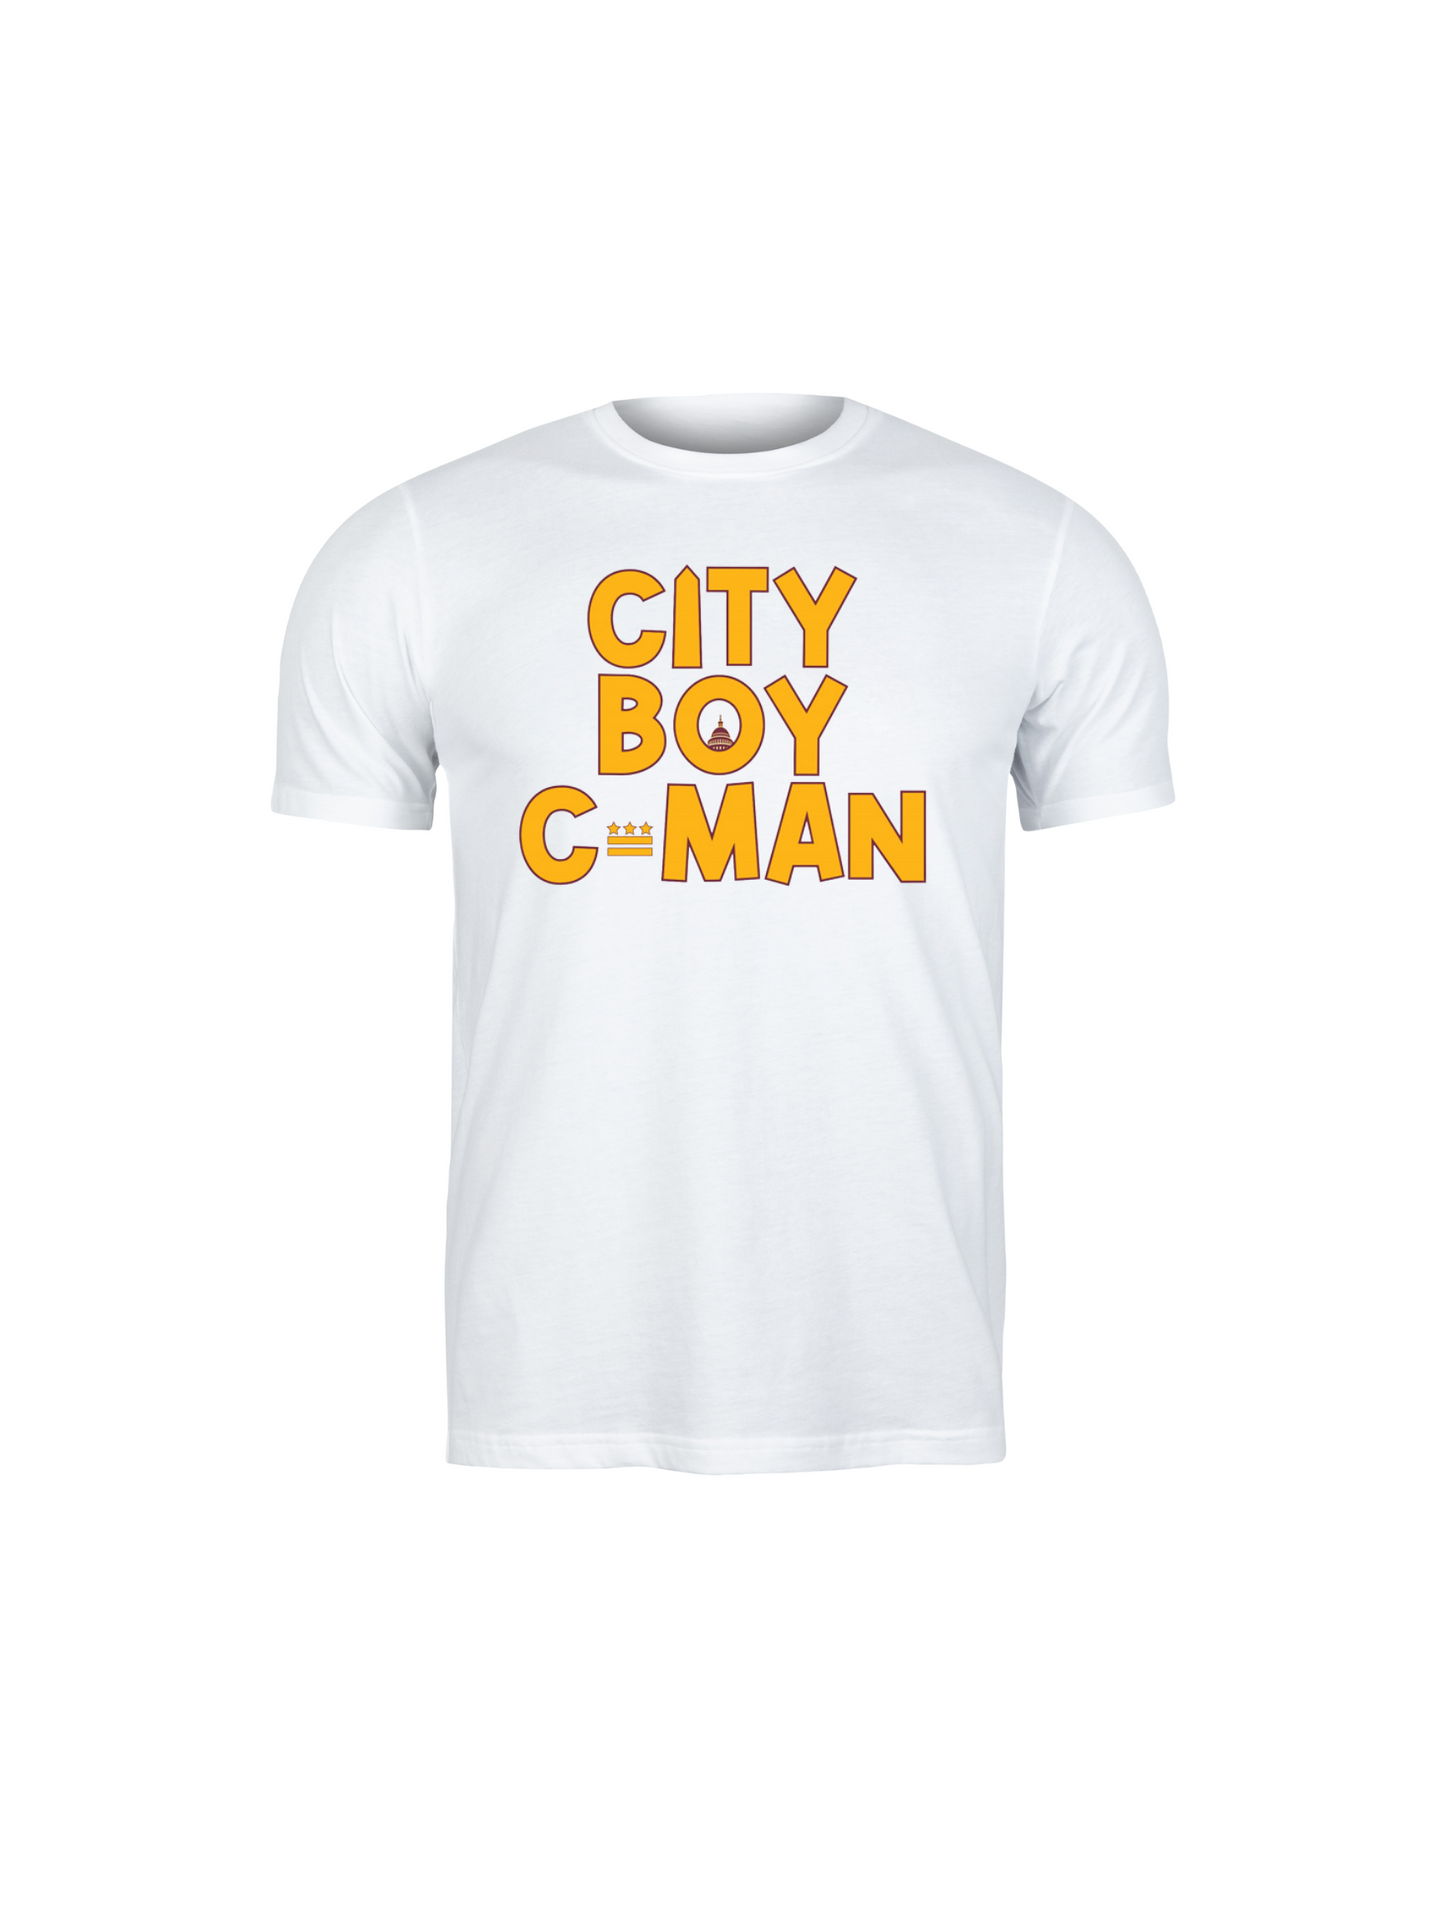 City Boy C-man